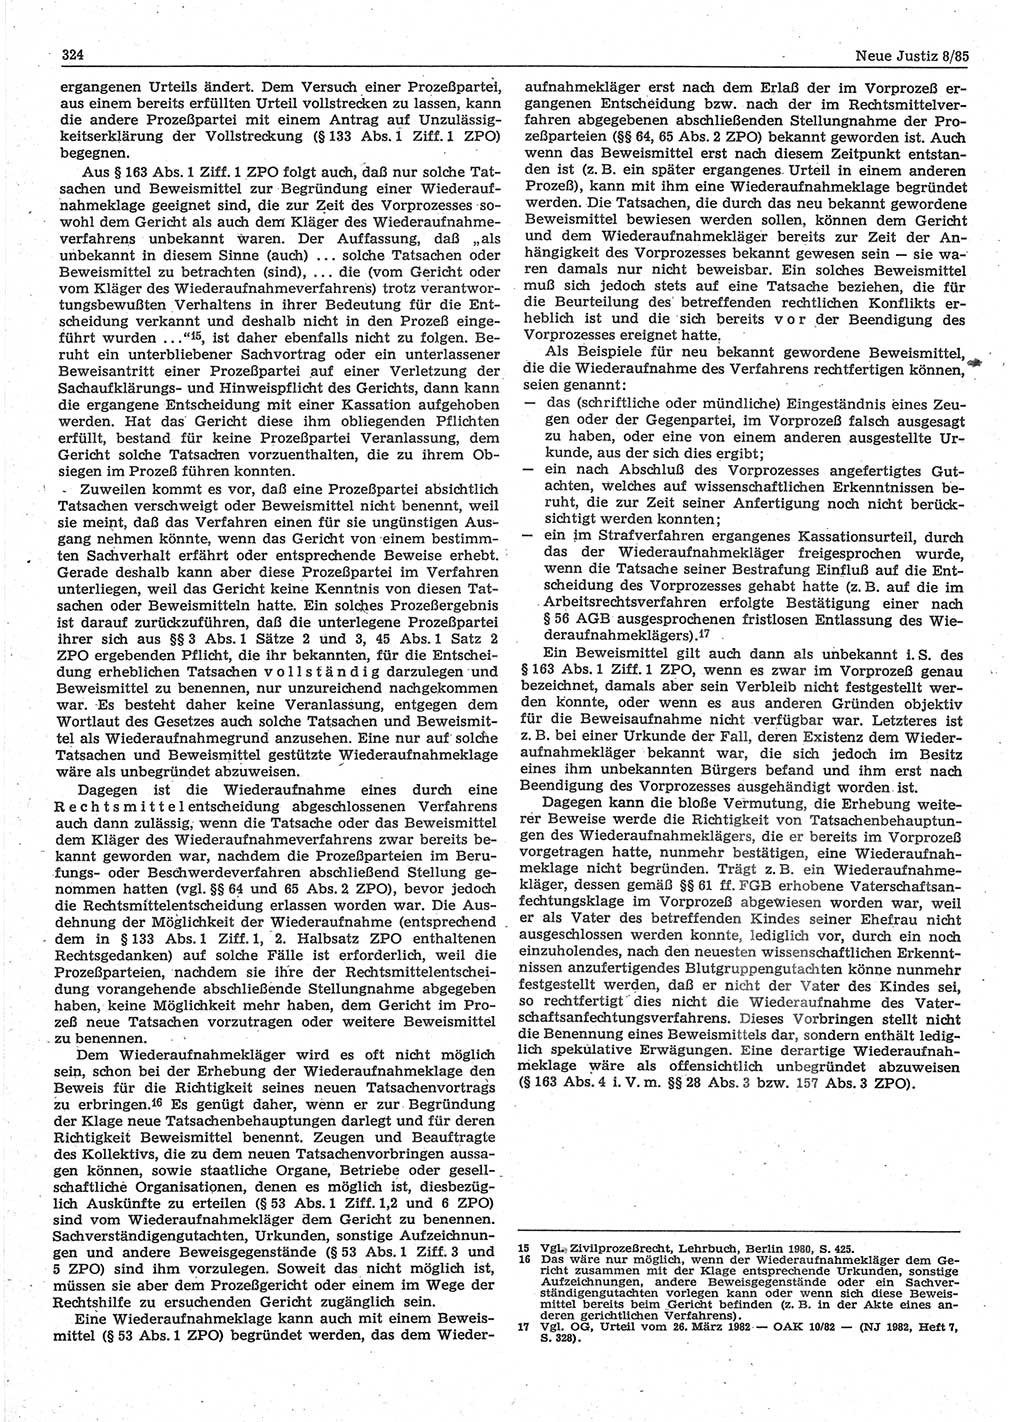 Neue Justiz (NJ), Zeitschrift für sozialistisches Recht und Gesetzlichkeit [Deutsche Demokratische Republik (DDR)], 39. Jahrgang 1985, Seite 324 (NJ DDR 1985, S. 324)